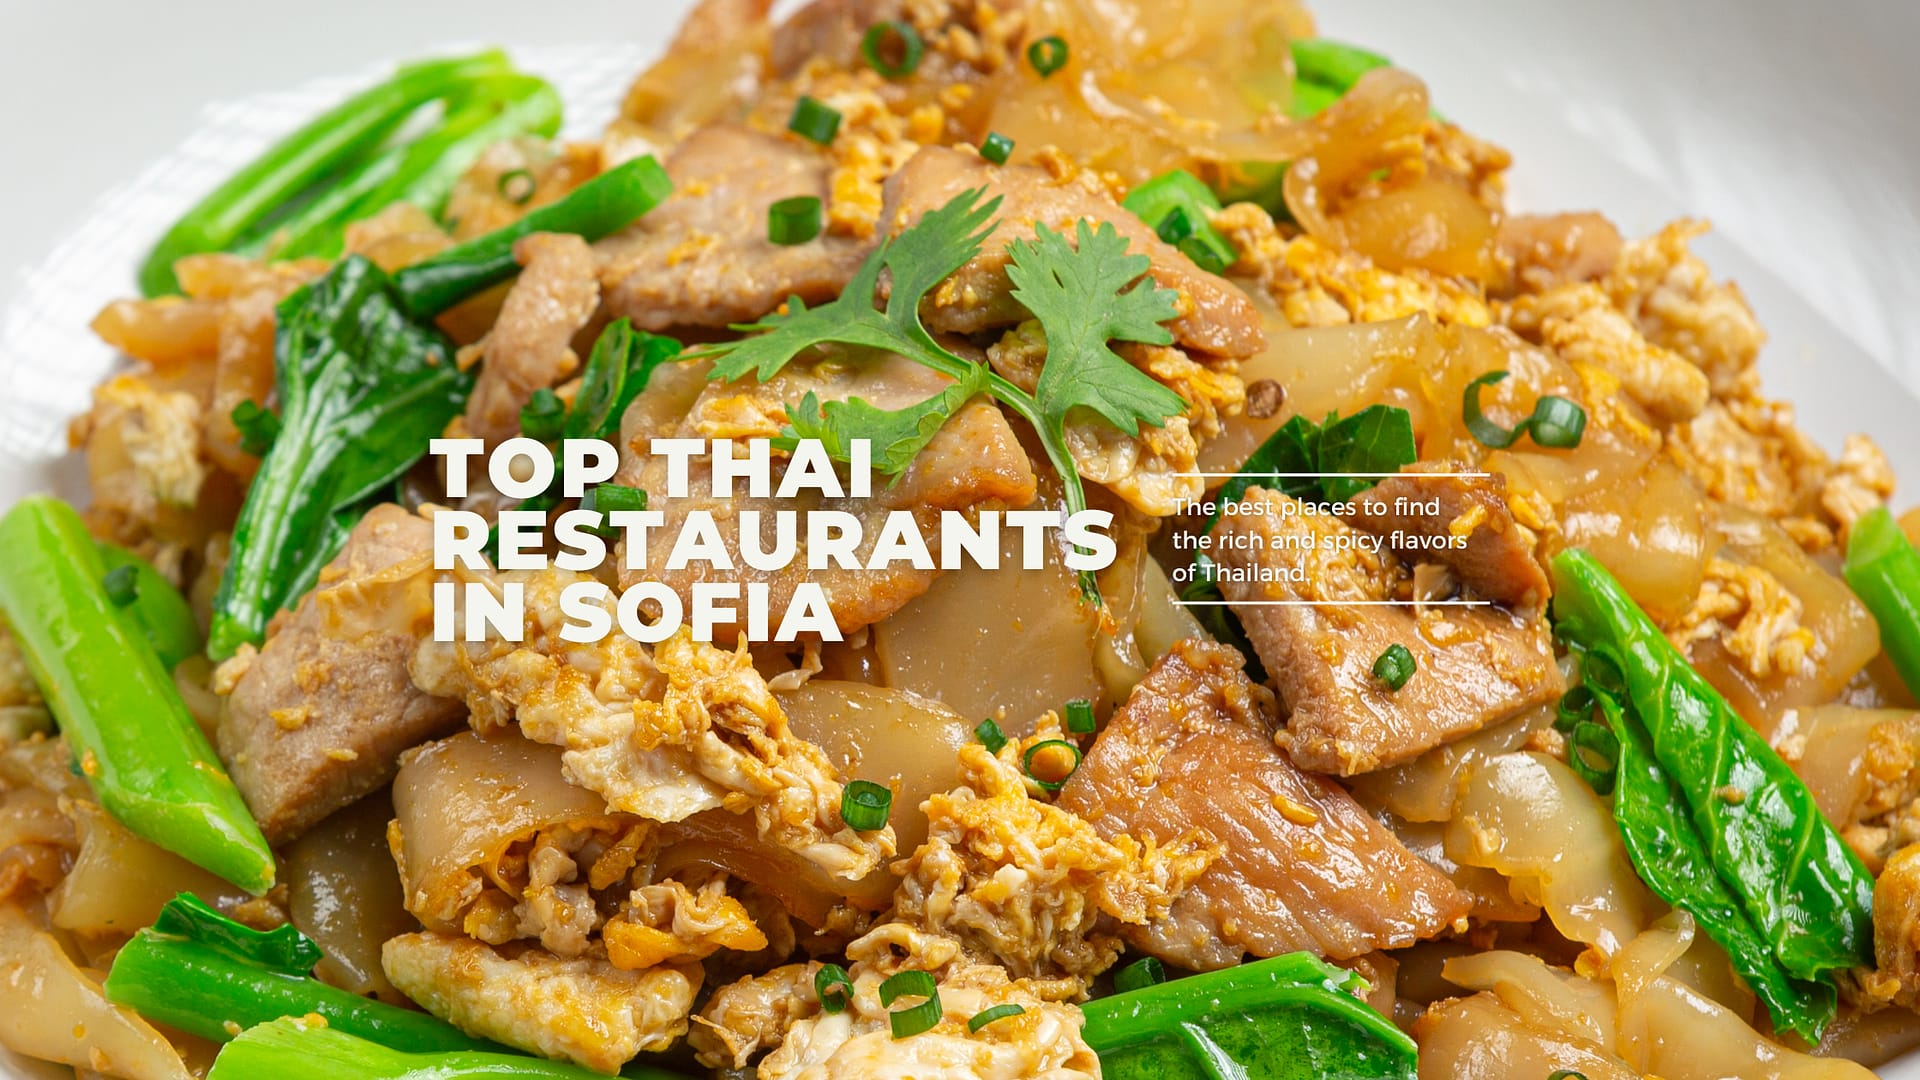 Best Thai restaurants in Sofia